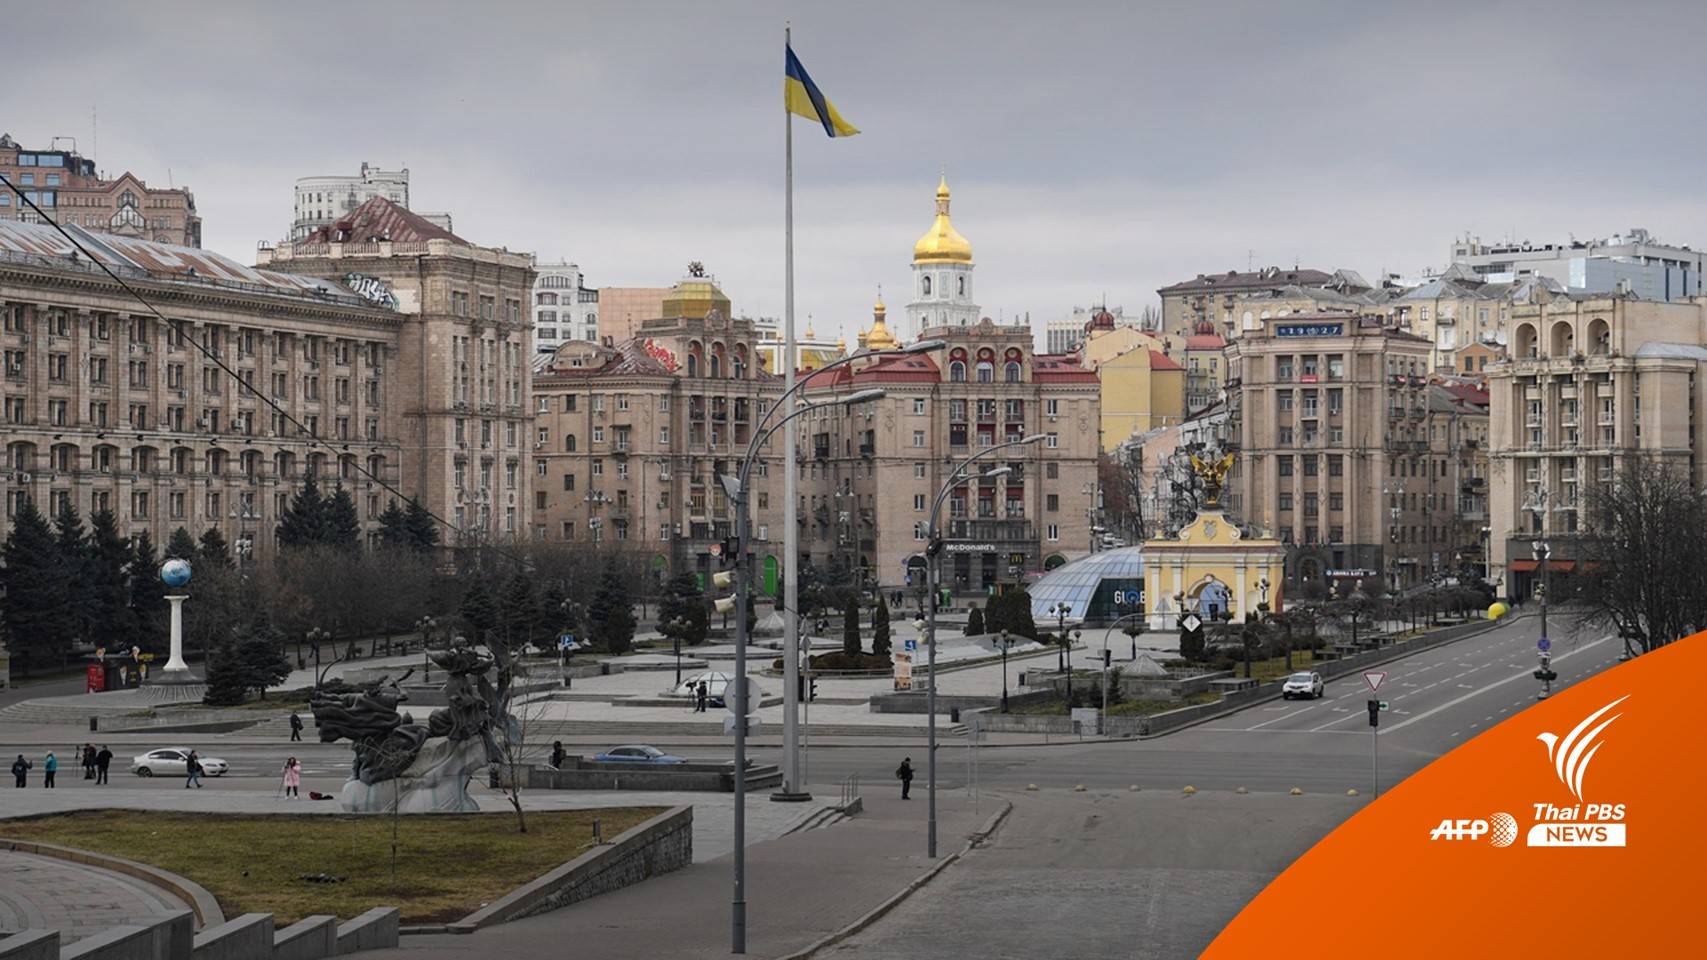 ยูเครนเผยรัสเซียเคลื่อนพลเข้าใกล้ใจกลาง "กรุงเคียฟ"